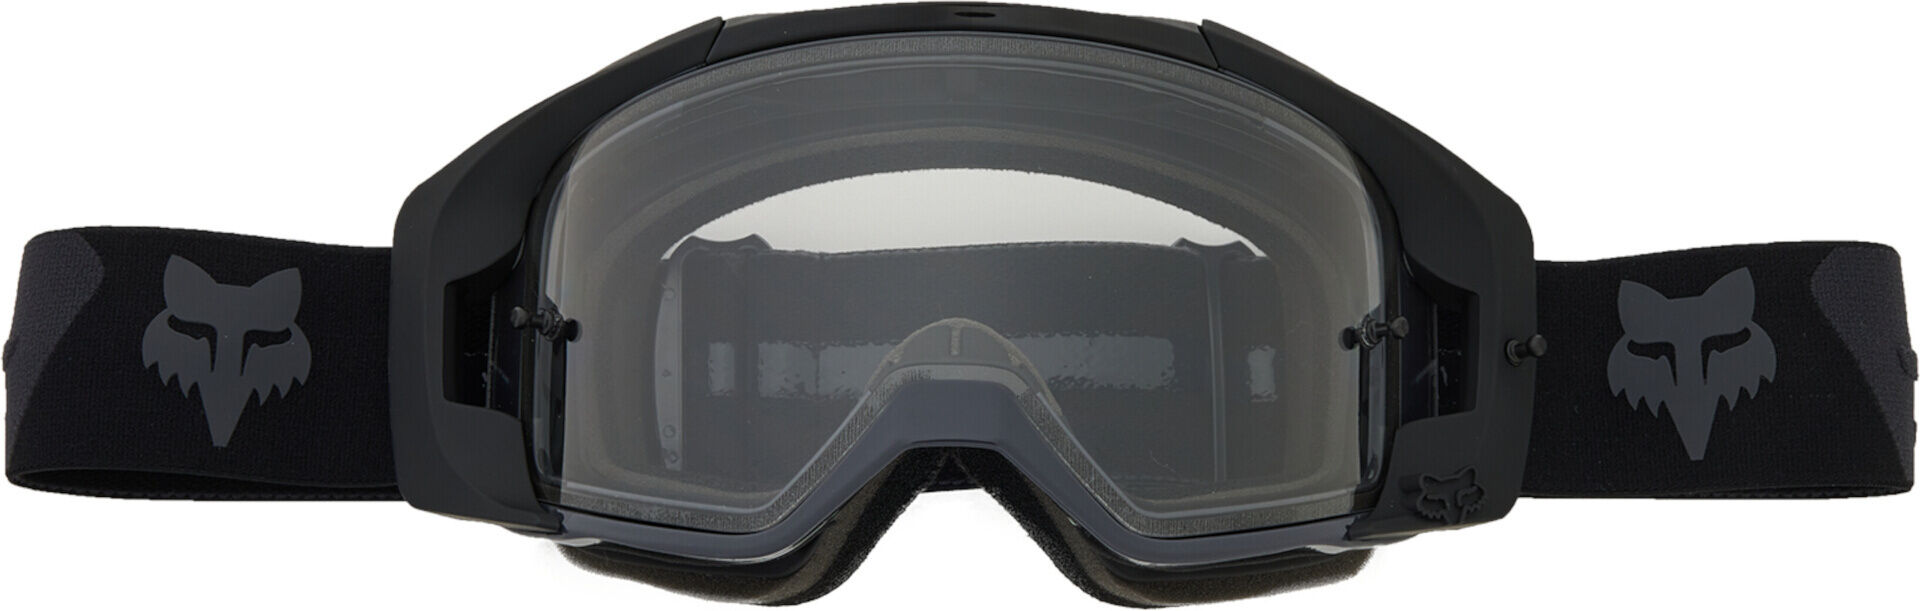 Fox Vue Core Gafas de motocross - Negro (un tamaño)